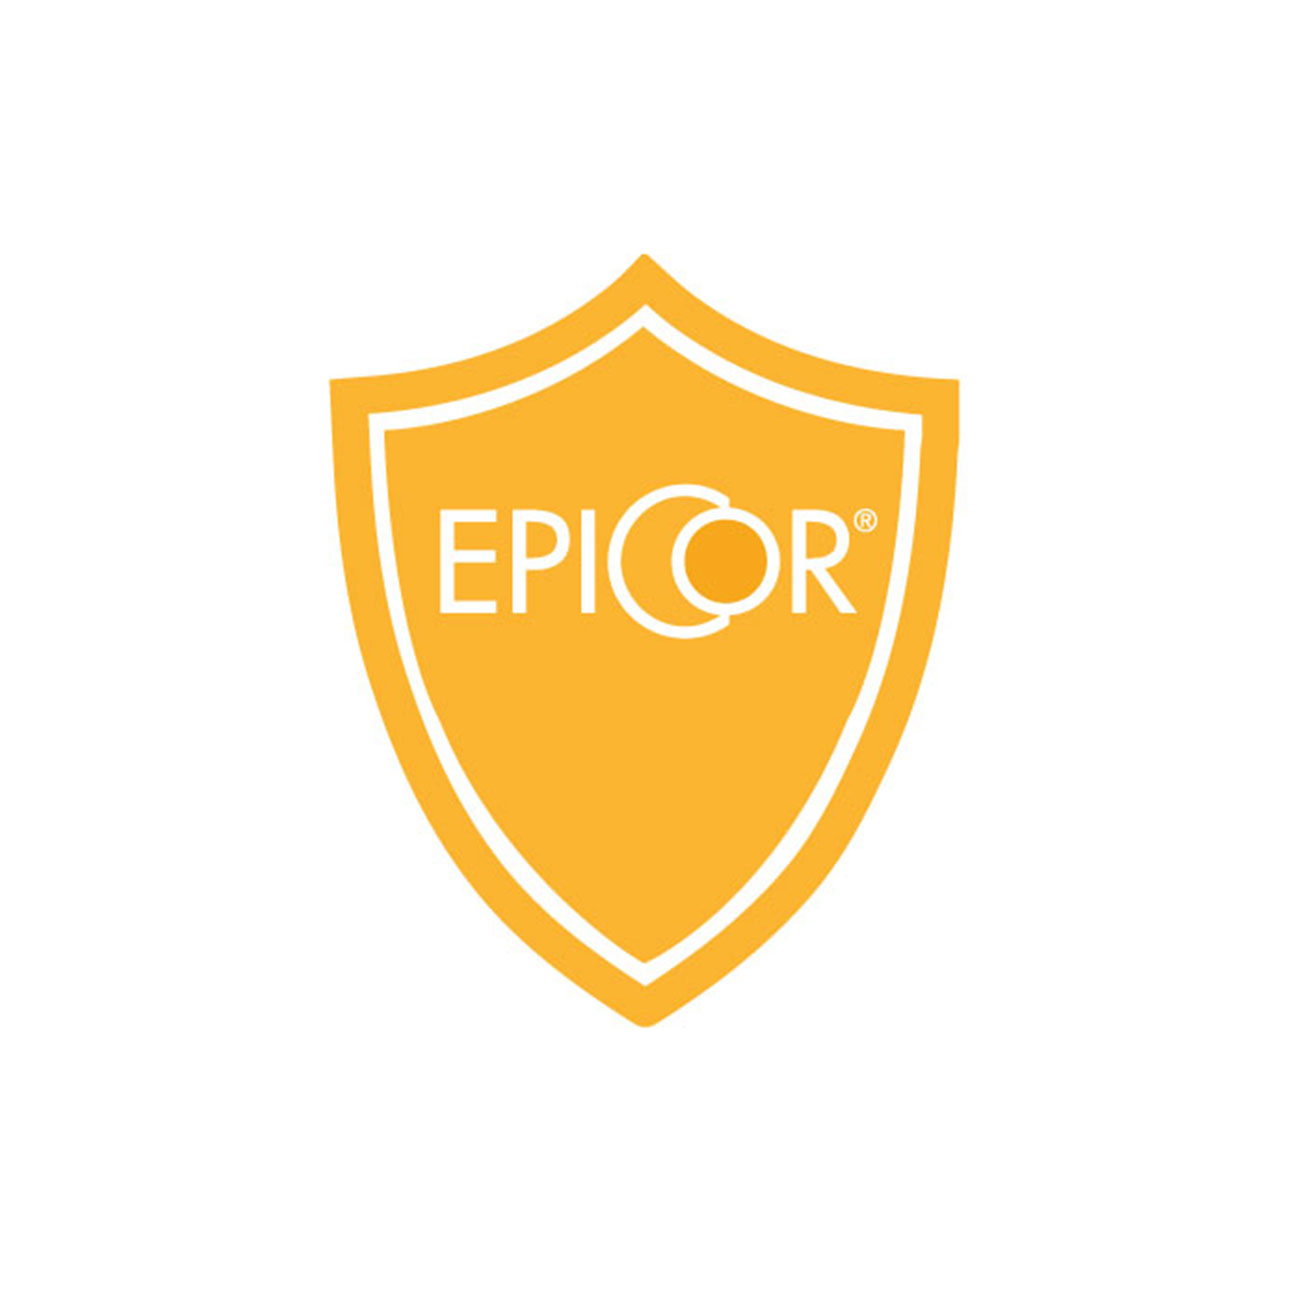 EpiCor® - celovit sastojak dodatka ishrani kojim se podržava zdravlje imunog sistema - logo